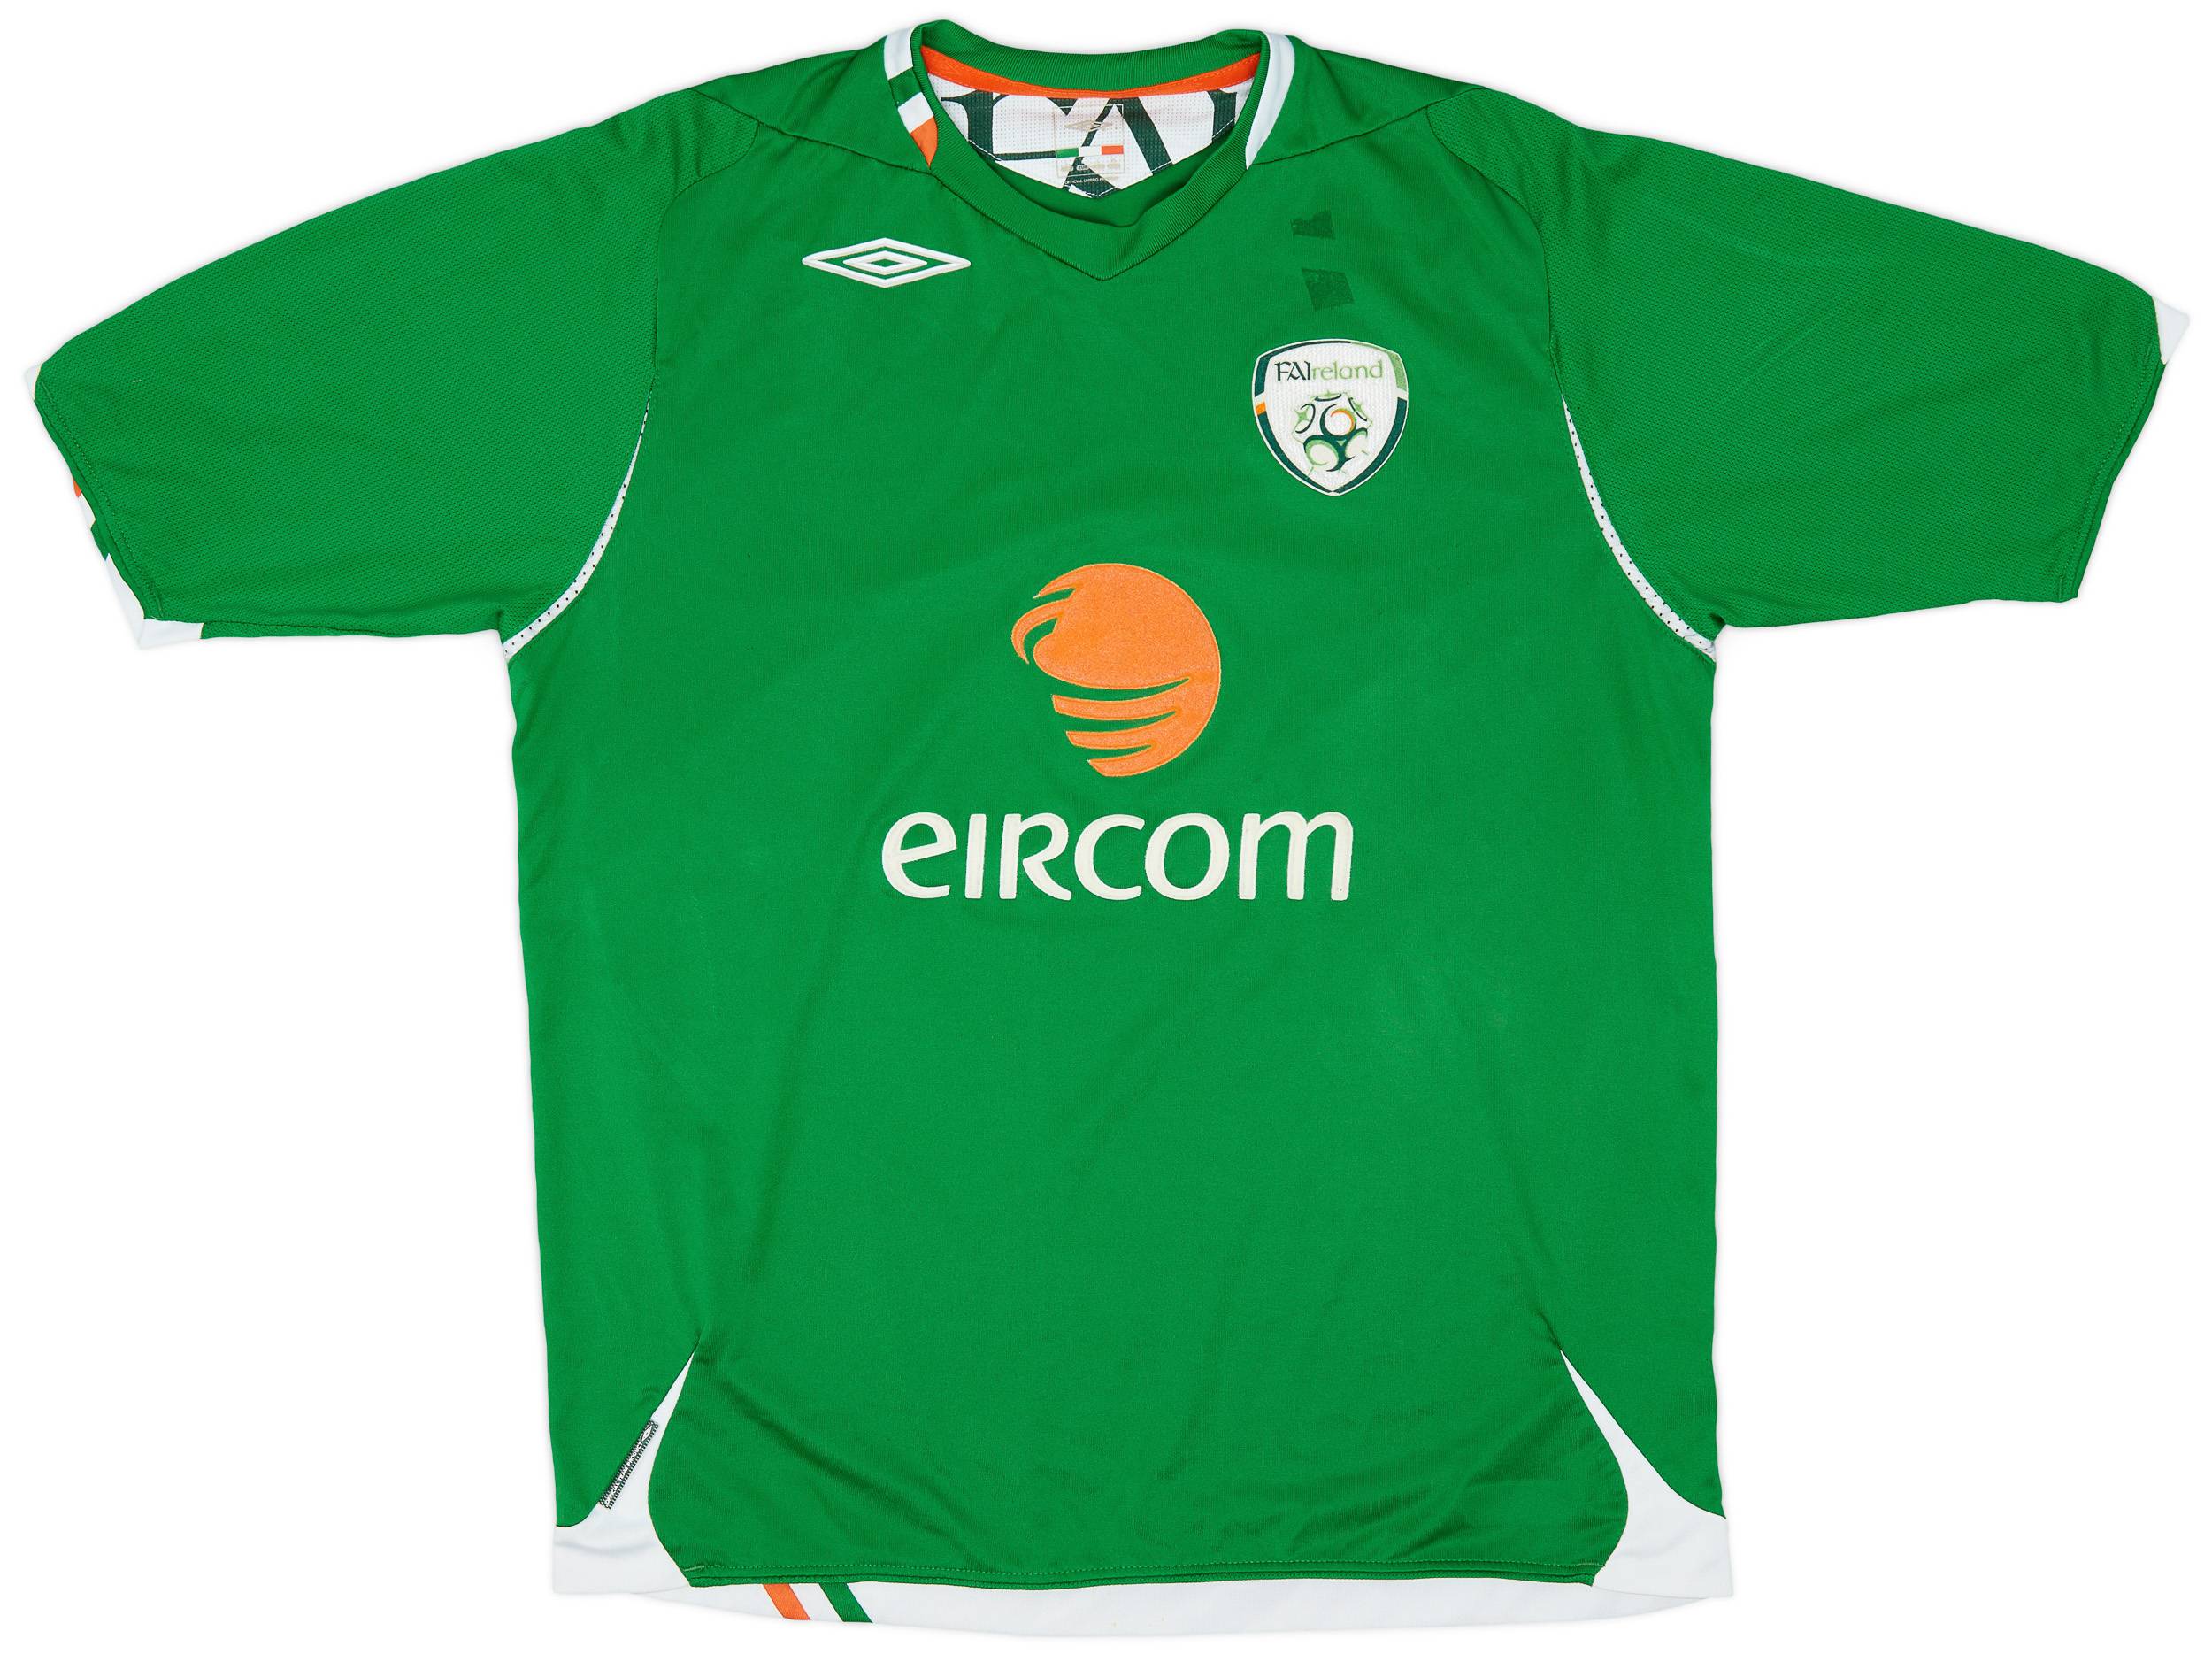 2006-08 Ireland Home Shirt - 6/10 - (L)